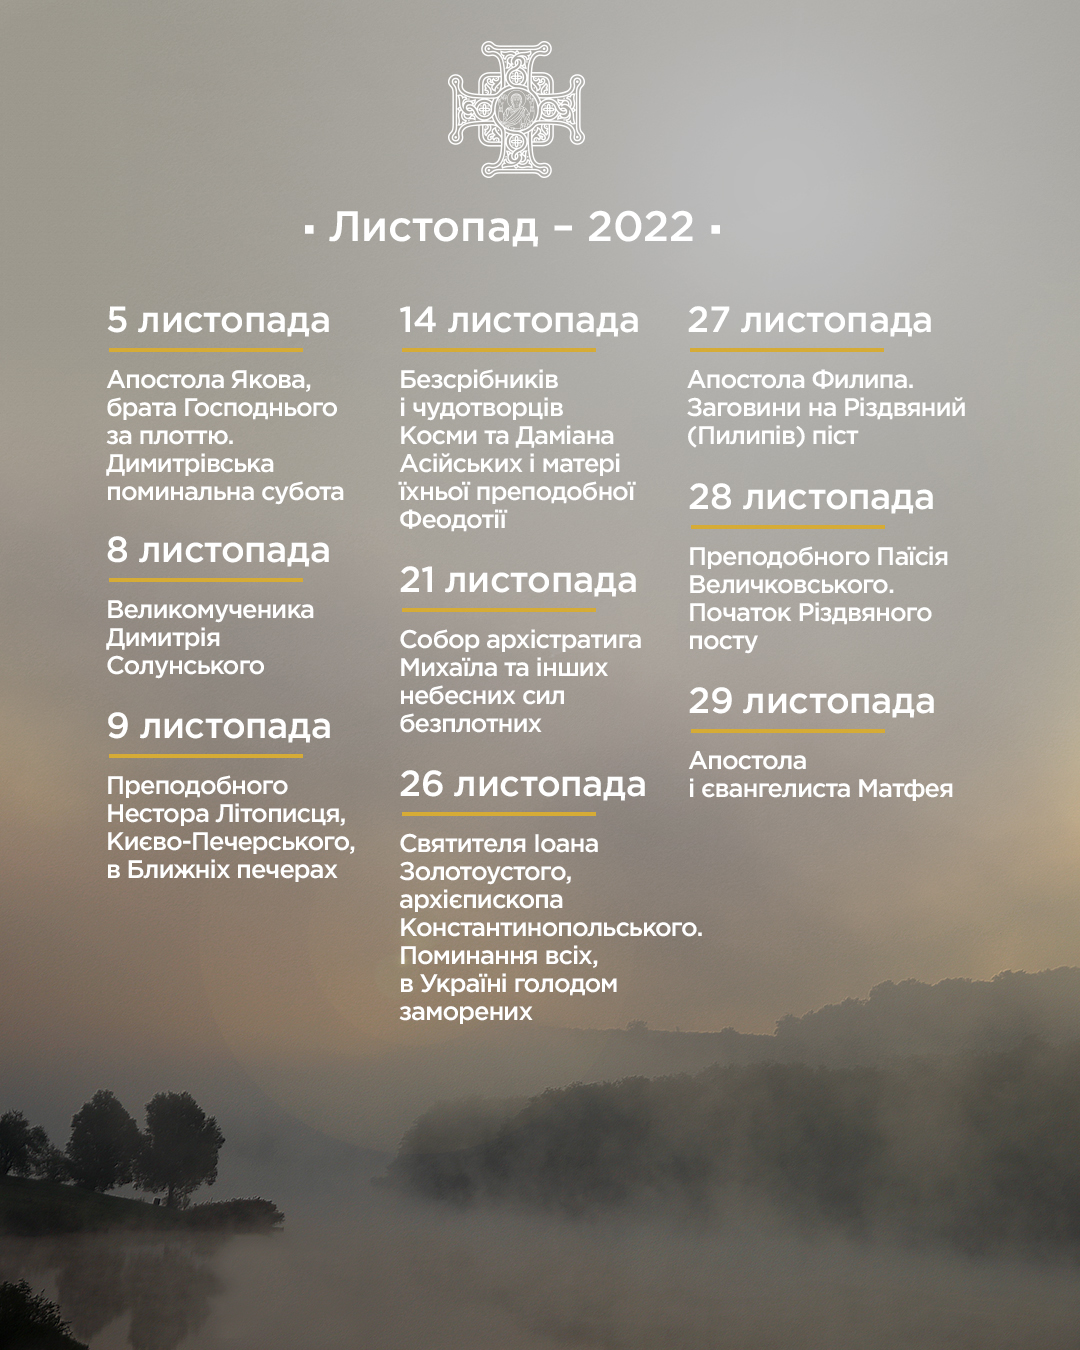 Свята у листопаді 2022 року: коли Димитрія та Михайля